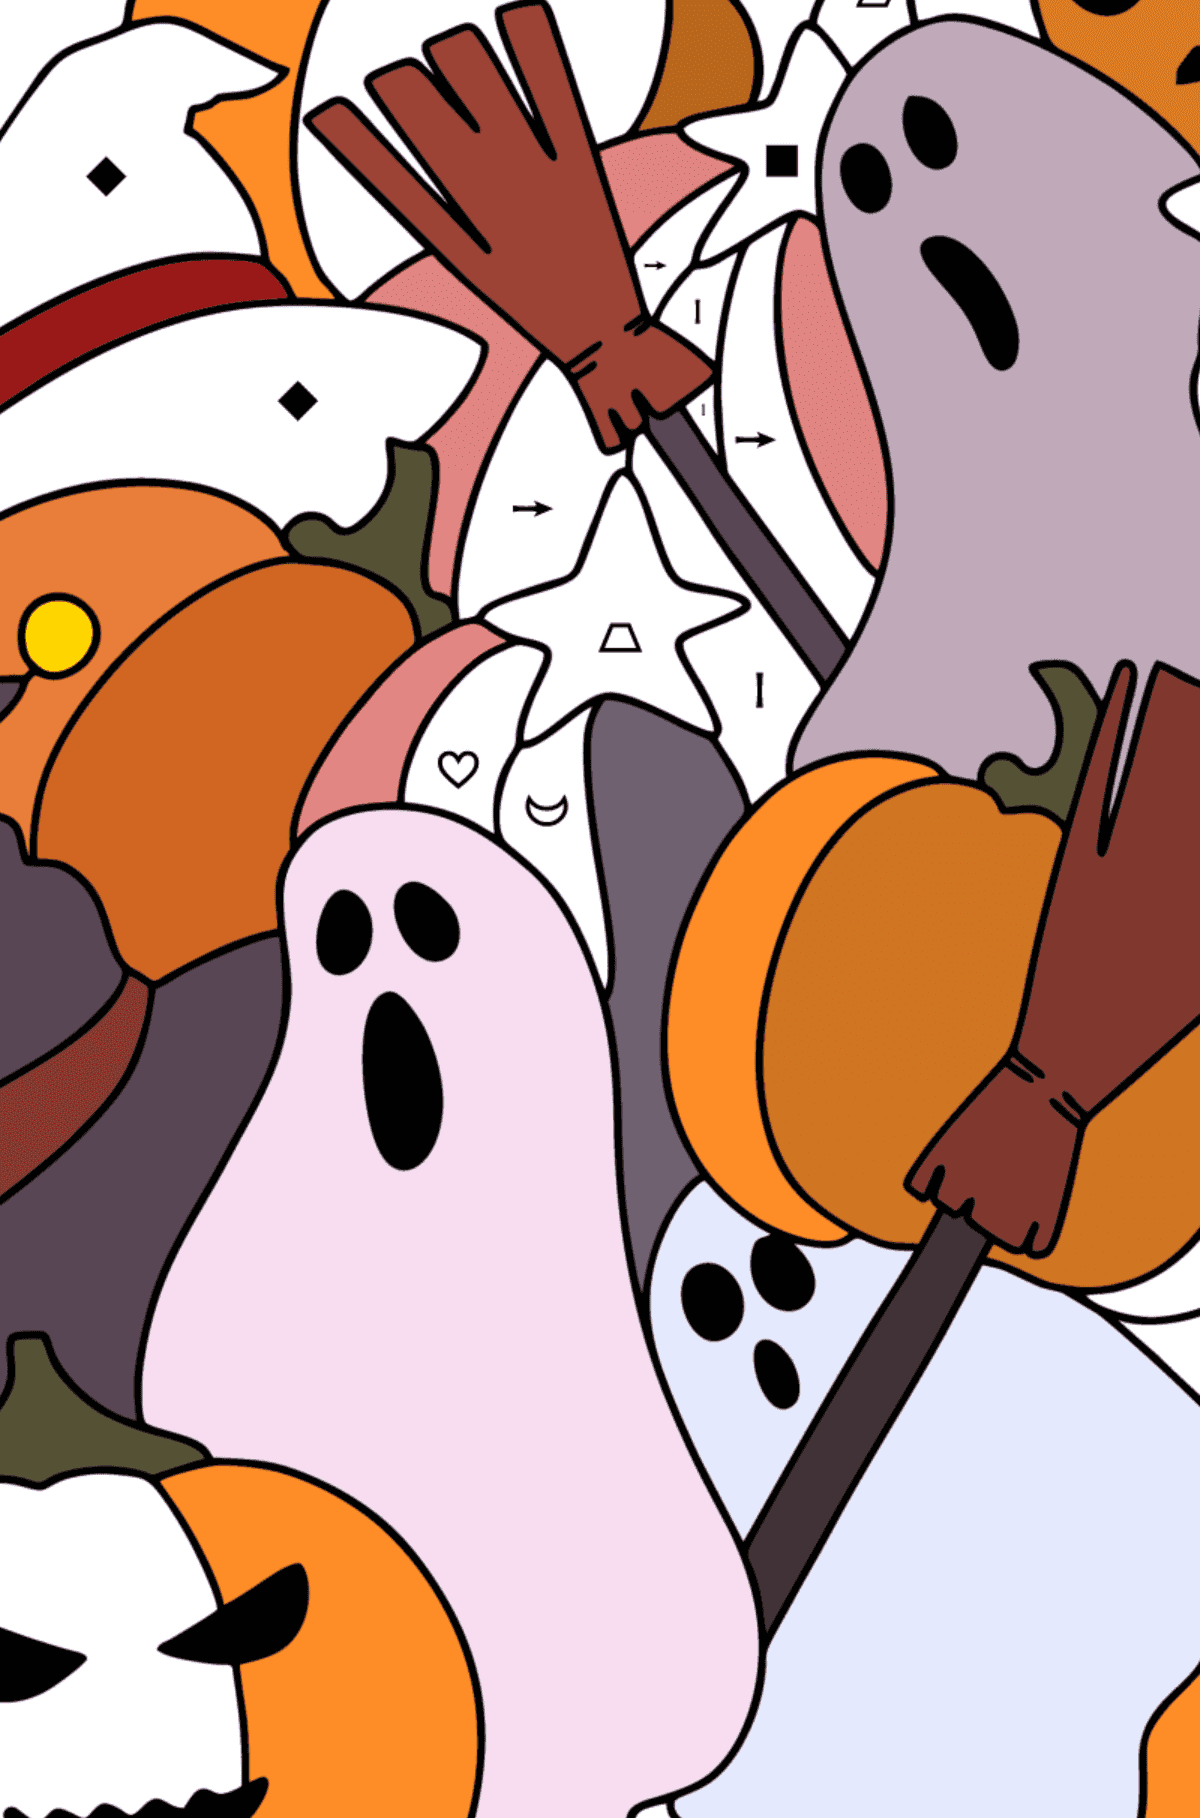 Doodle Kolorowanka dla dzieci - Halloween - Kolorowanie według symboli i figur geometrycznych dla dzieci